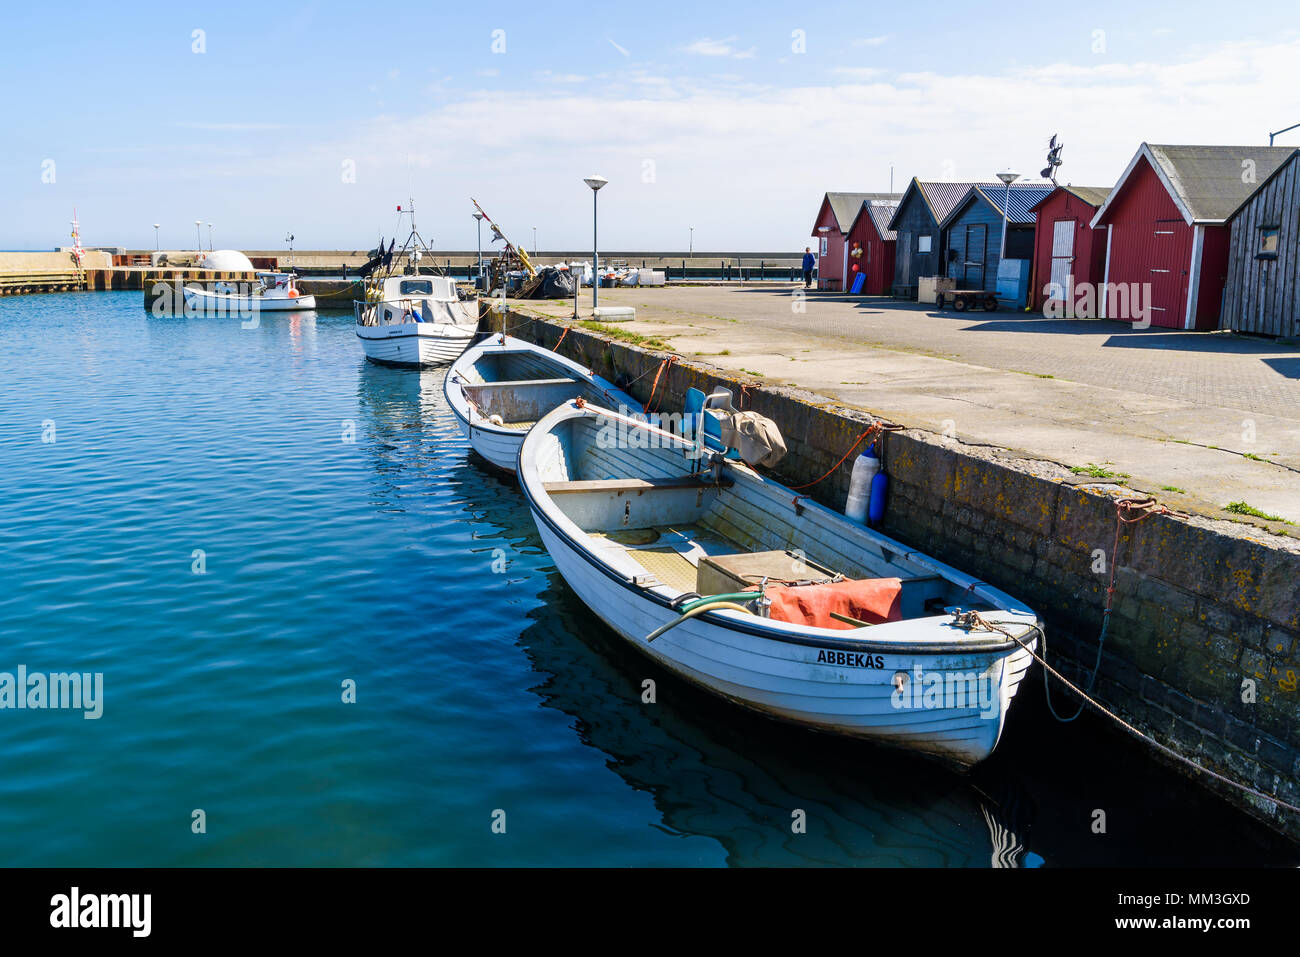 Abbekas, Schweden - 27 April, 2018: Reisen Dokumentarfilm von Alltag und Umwelt. Kleine weiße Fischerboote und Fischerhütten im Hafen auf einer s Stockfoto